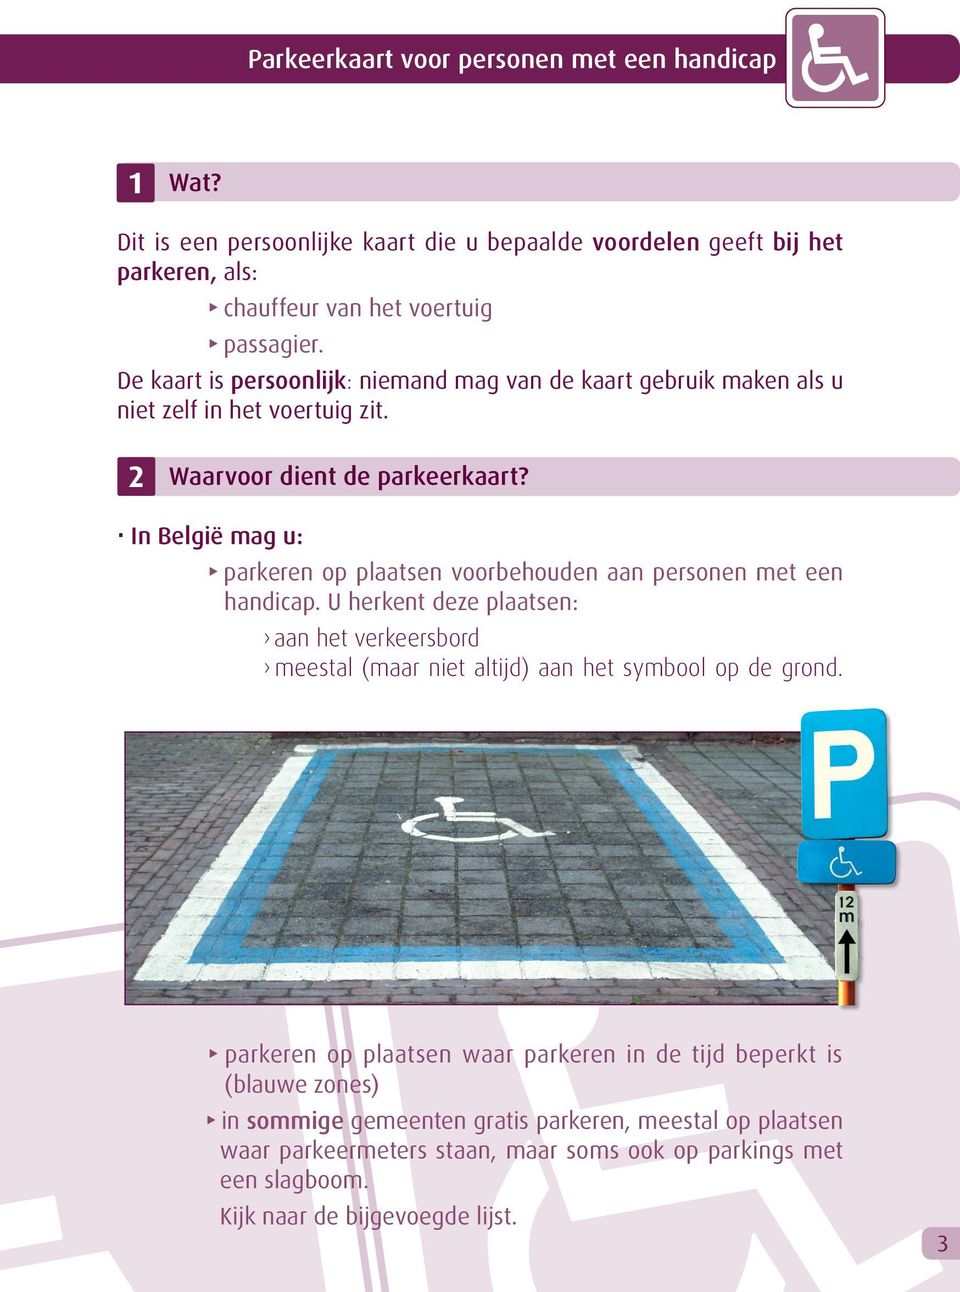 In België mag u: parkeren op plaatsen voorbehouden aan personen met een handicap.